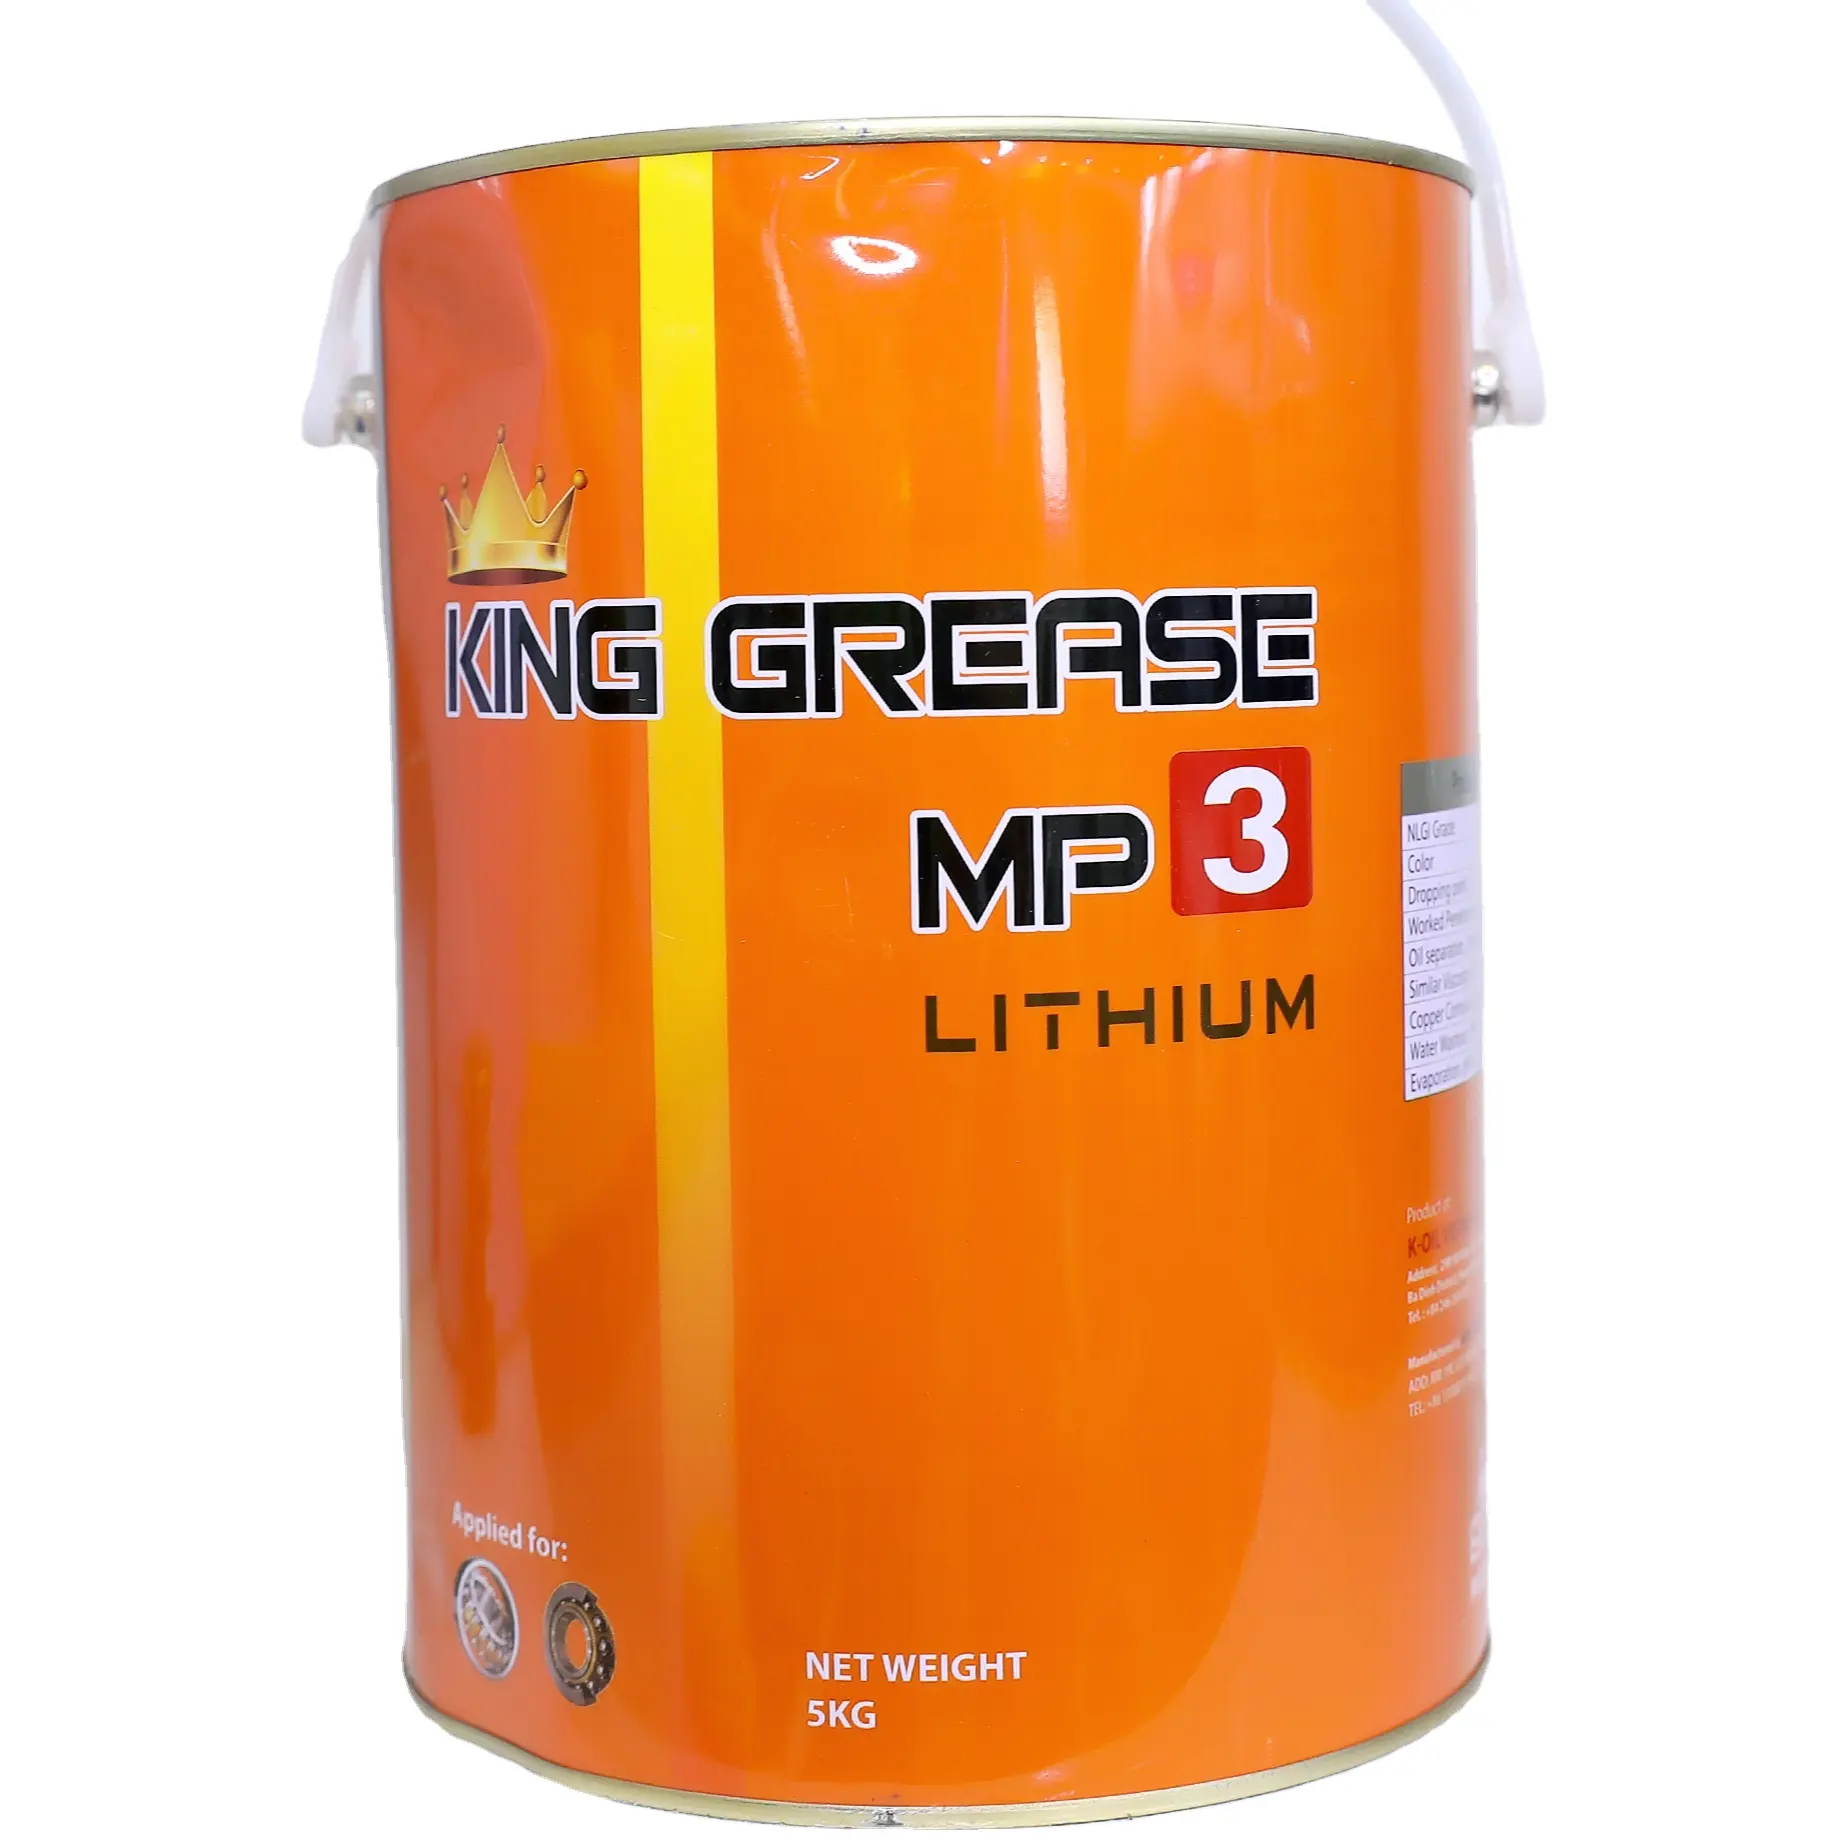 K-OIL KING GREASE Lithium MP3 fábrica no Vietnã, alta qualidade e preço barato para aplicações automotivas. Óleo graxa